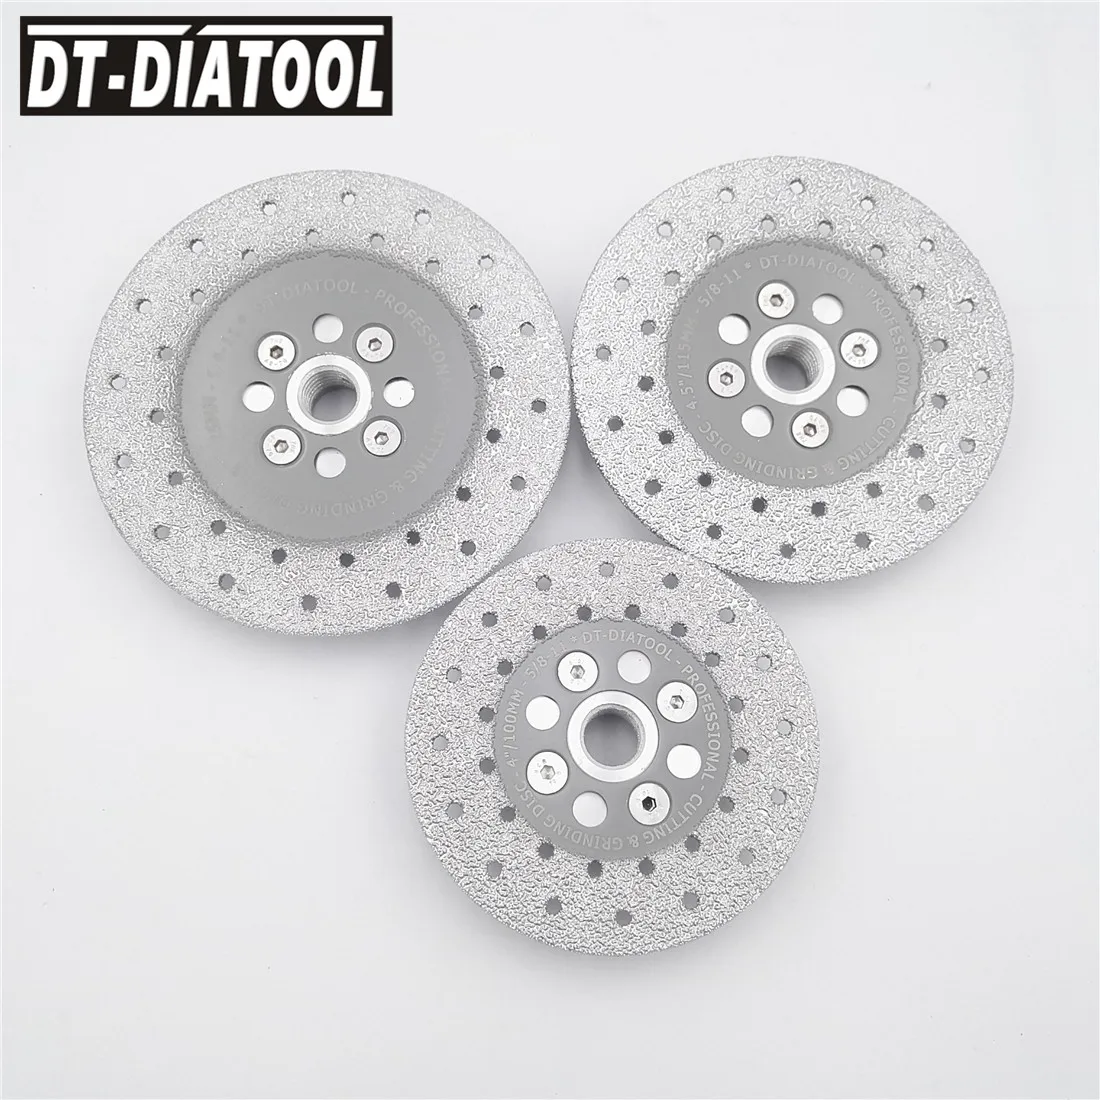 Двухсторонний Алмазный шлифовальный диск DT-DIATOOL 1 шт. с фланцем 5/8-11, лезвие пилы для мрамора, гранита и бетона от AliExpress WW